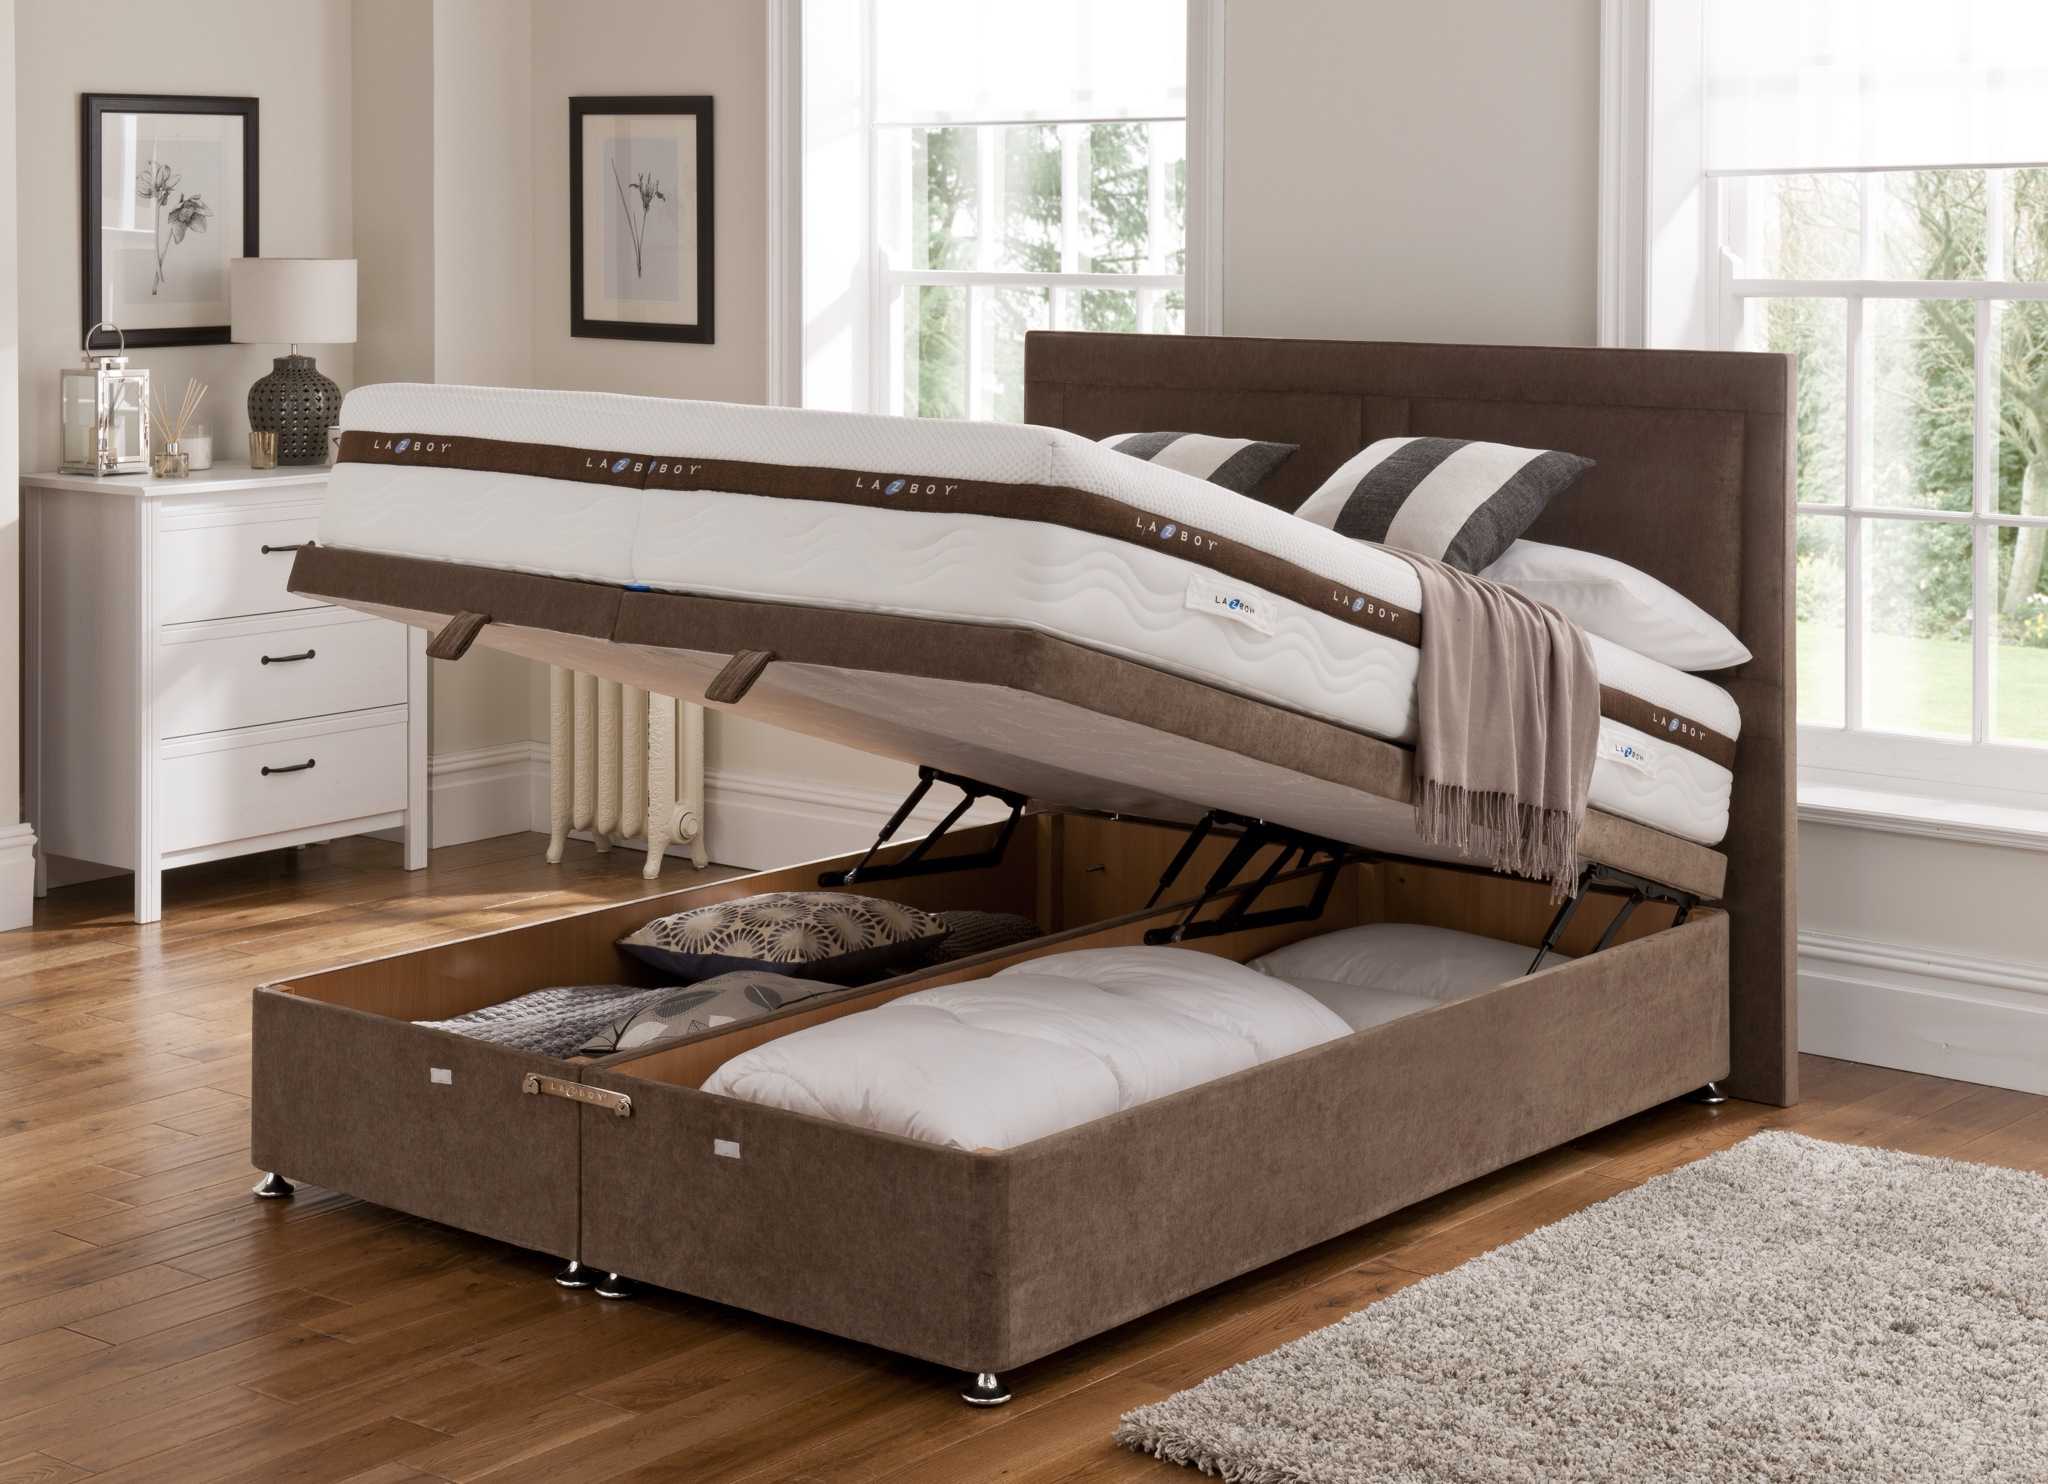 Рейтинг производителей кроватей. Модели кроватей. Самая удобная кровать. Популярные кровати. Новая кровать.